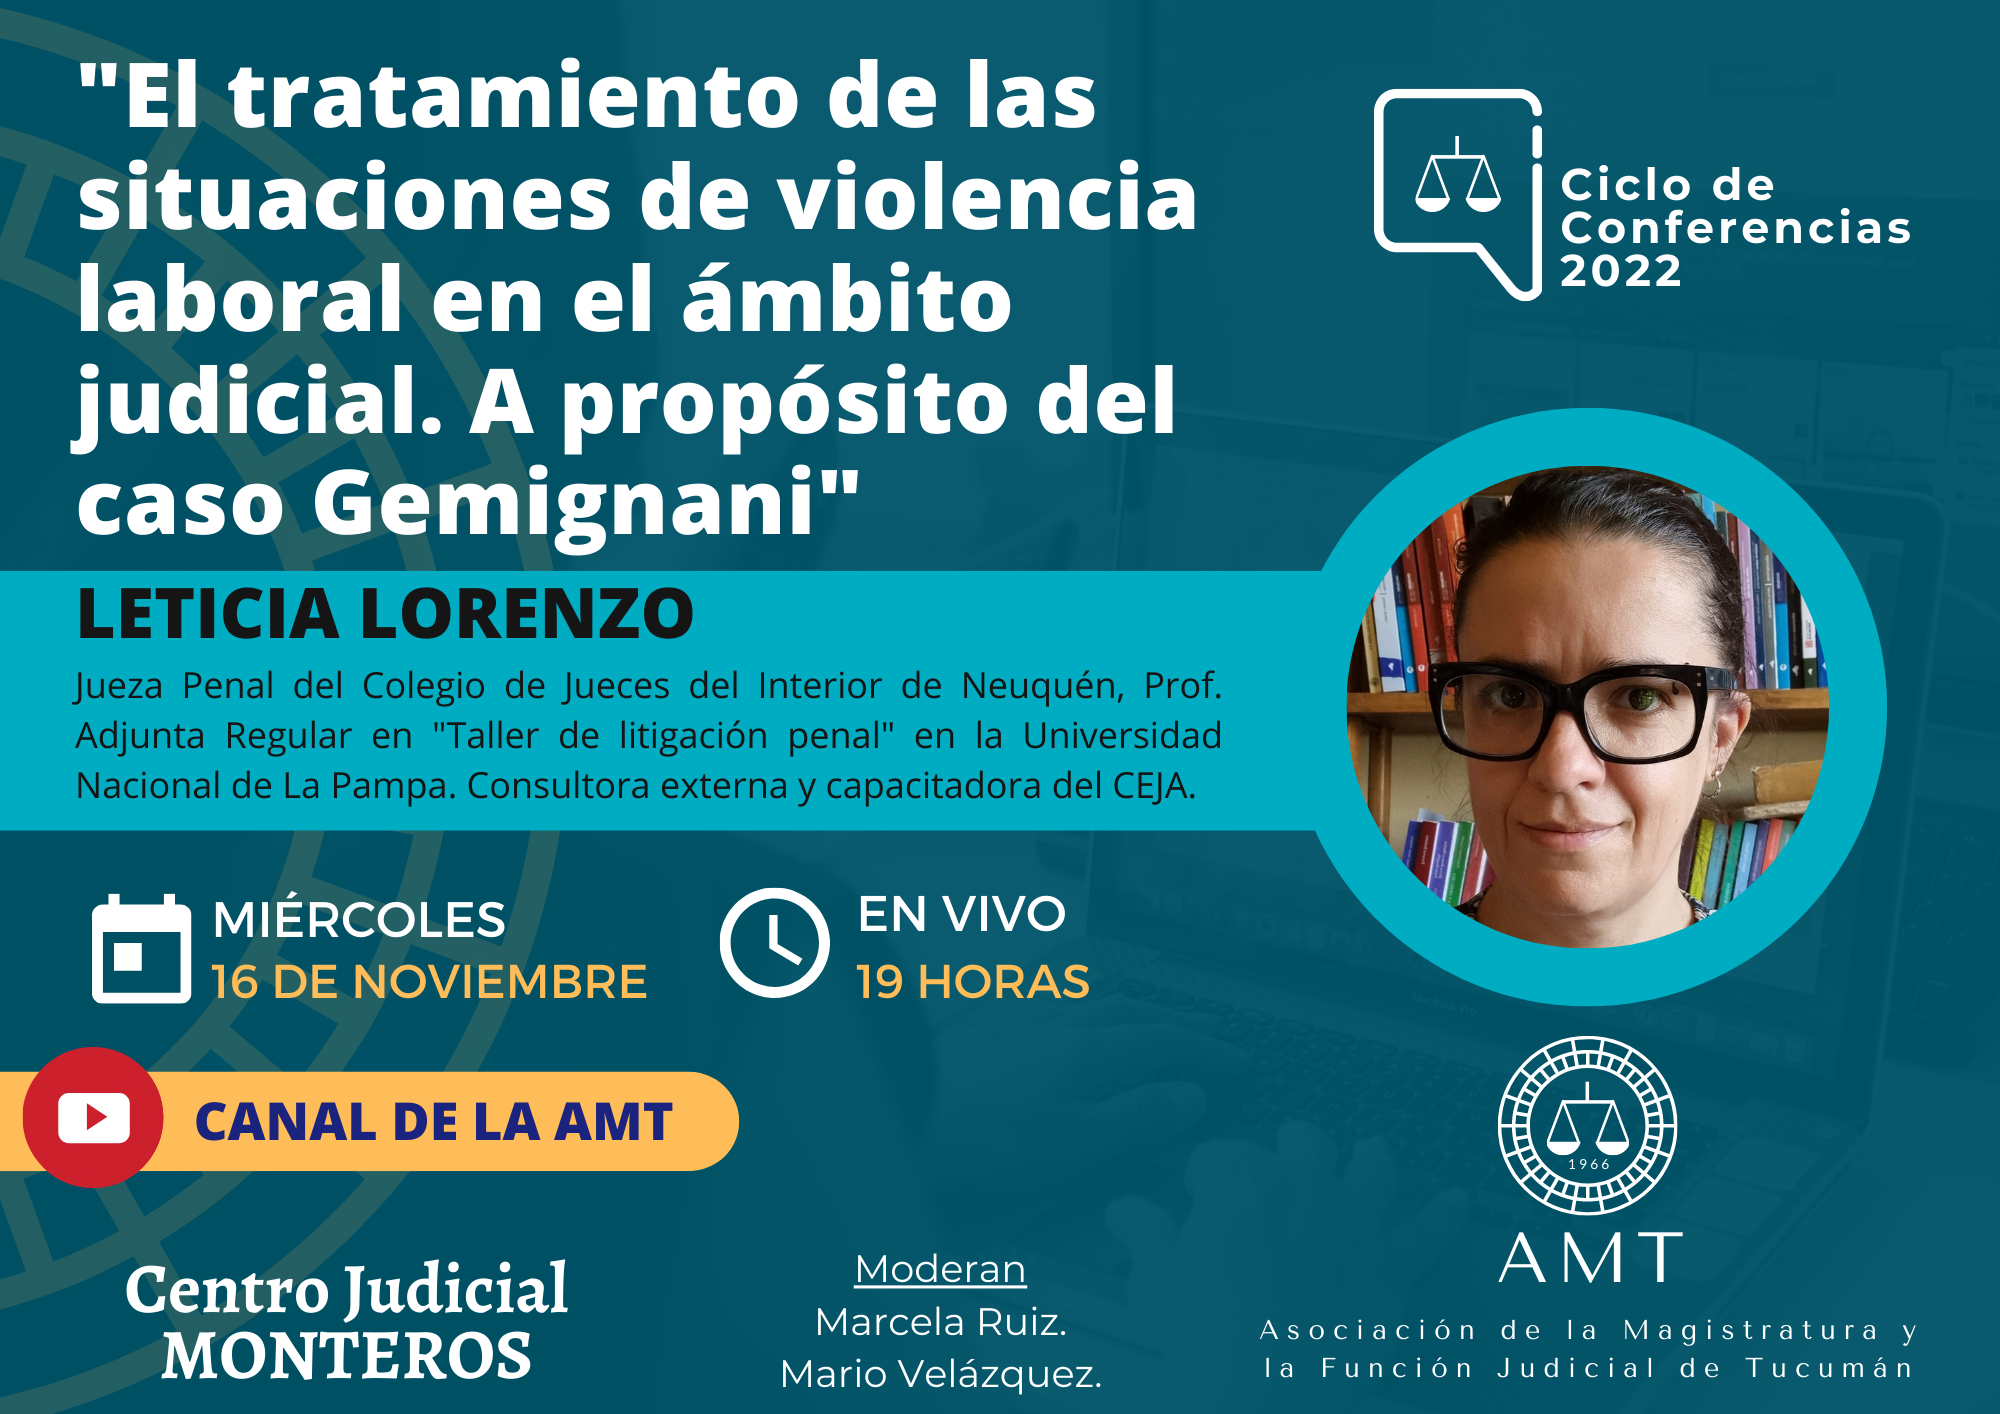 Vuelva a ver la conferencia de Leticia Lorenzo «El tratamiento de las situaciones de violencia laboral en el ámbito judicial»